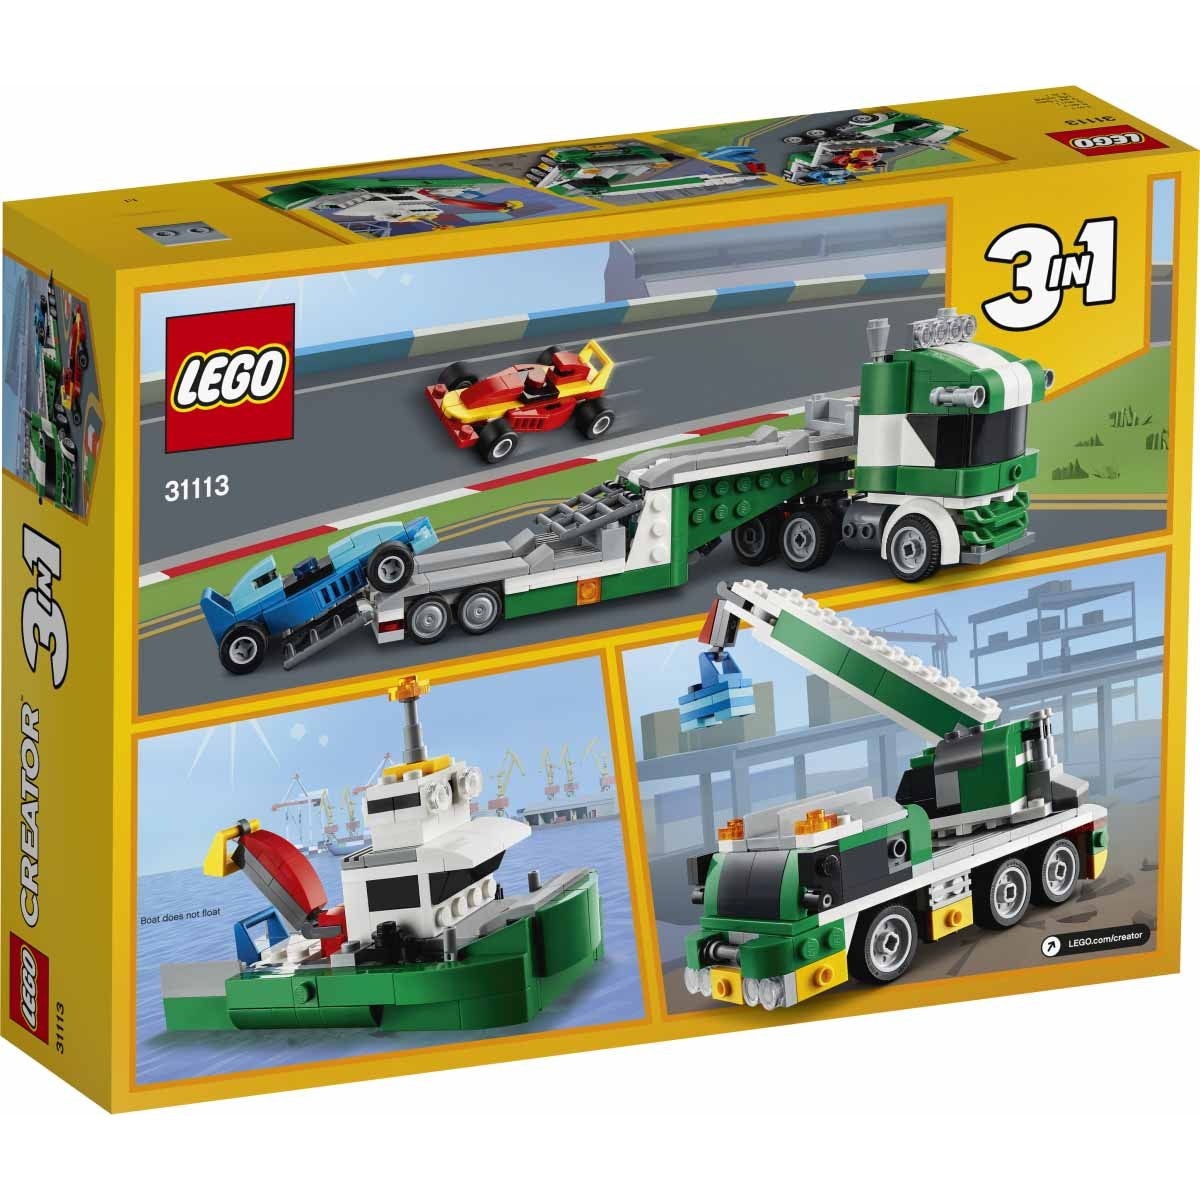 Transporte de Autos de Carreras Lego Creator